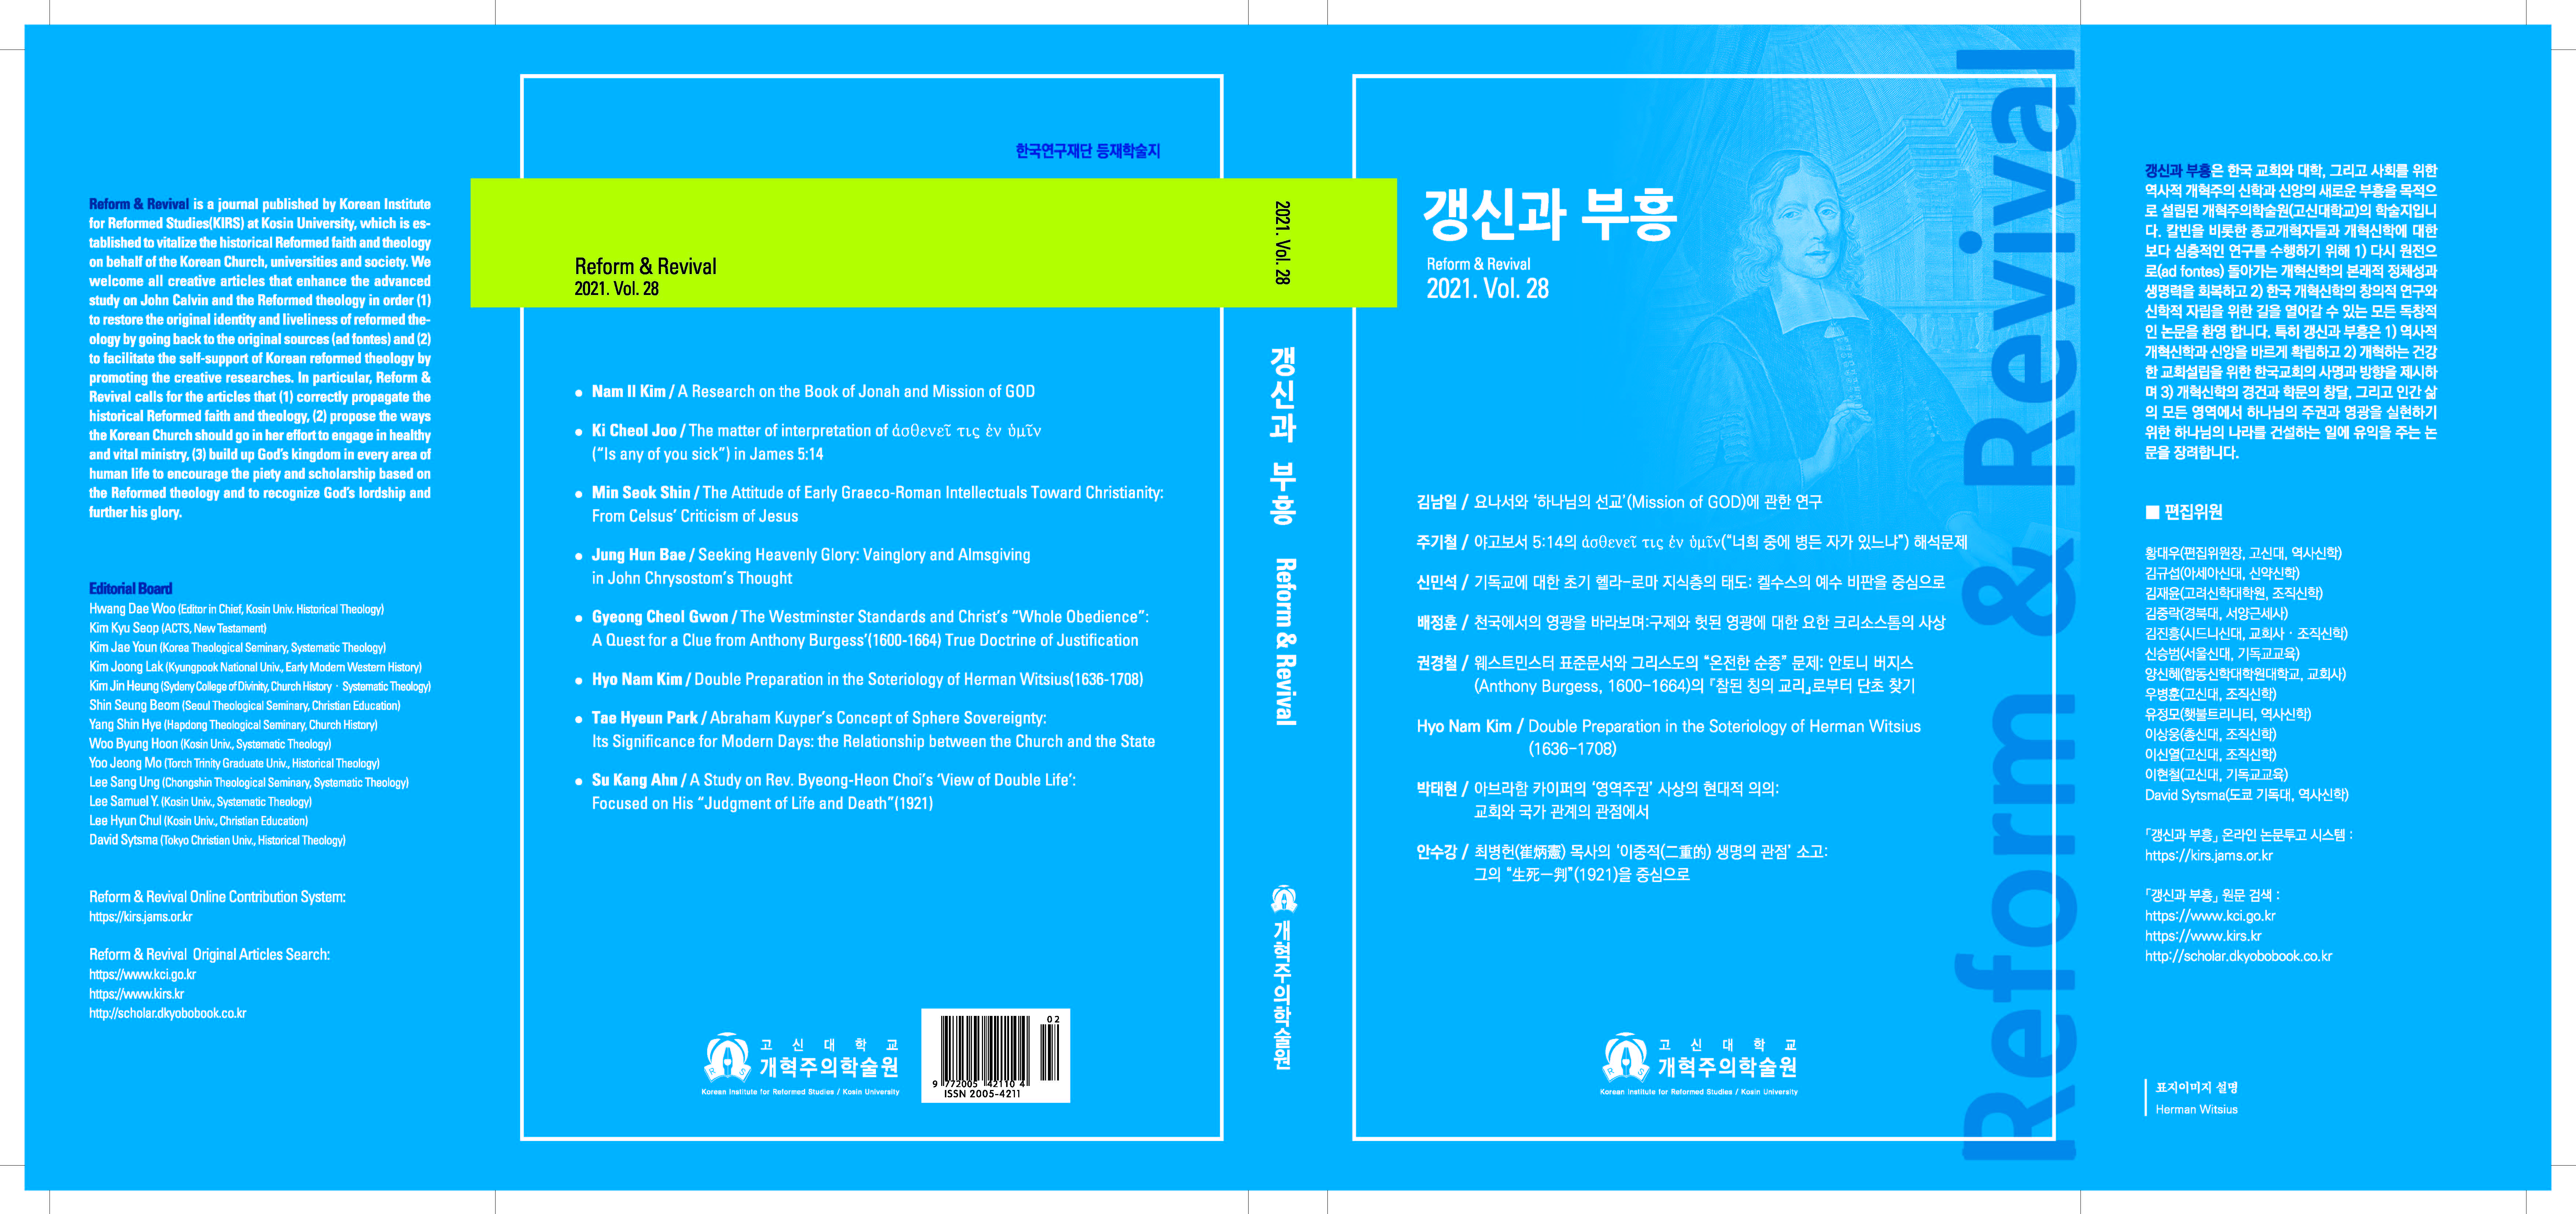 표지-갱신과부흥 Vol.28_4차 최종.jpg